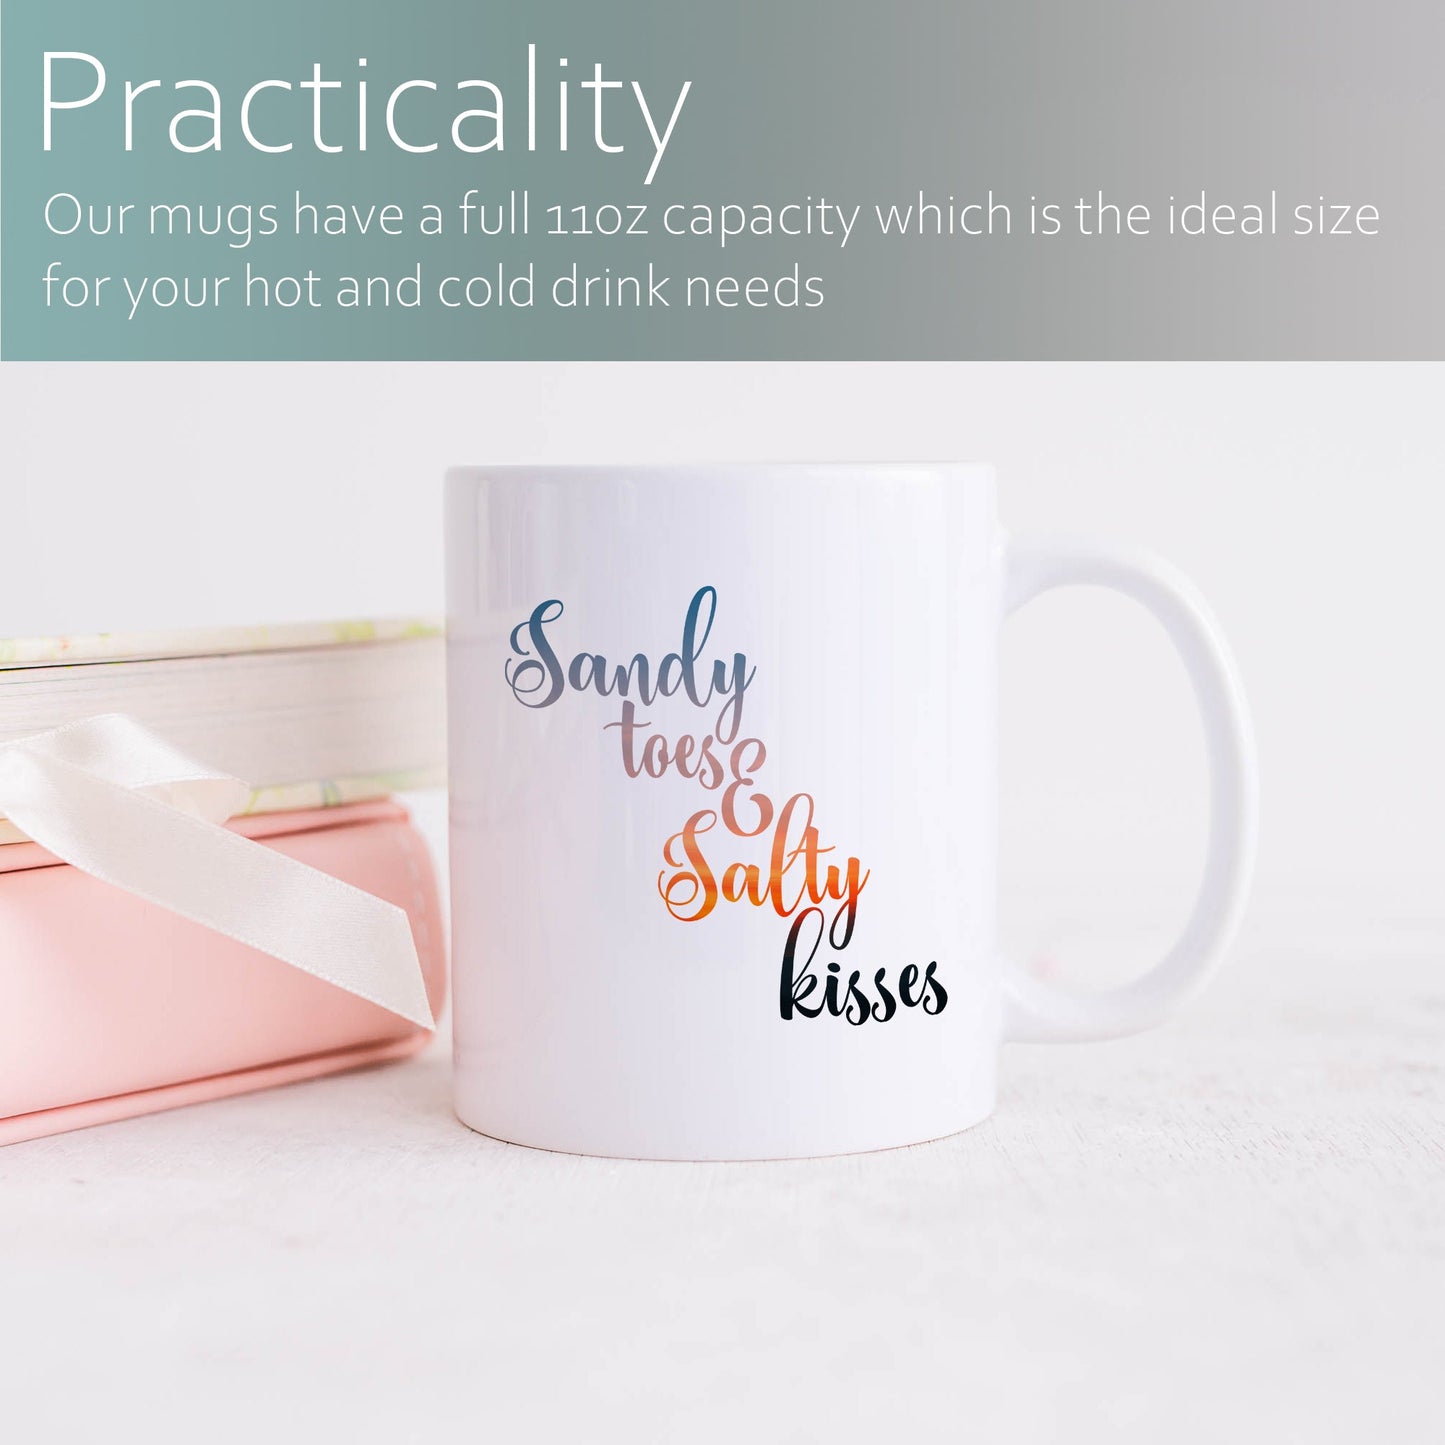 Sandy toes and salty kisses | Ceramic mug-Ceramic mug-Adnil Creations